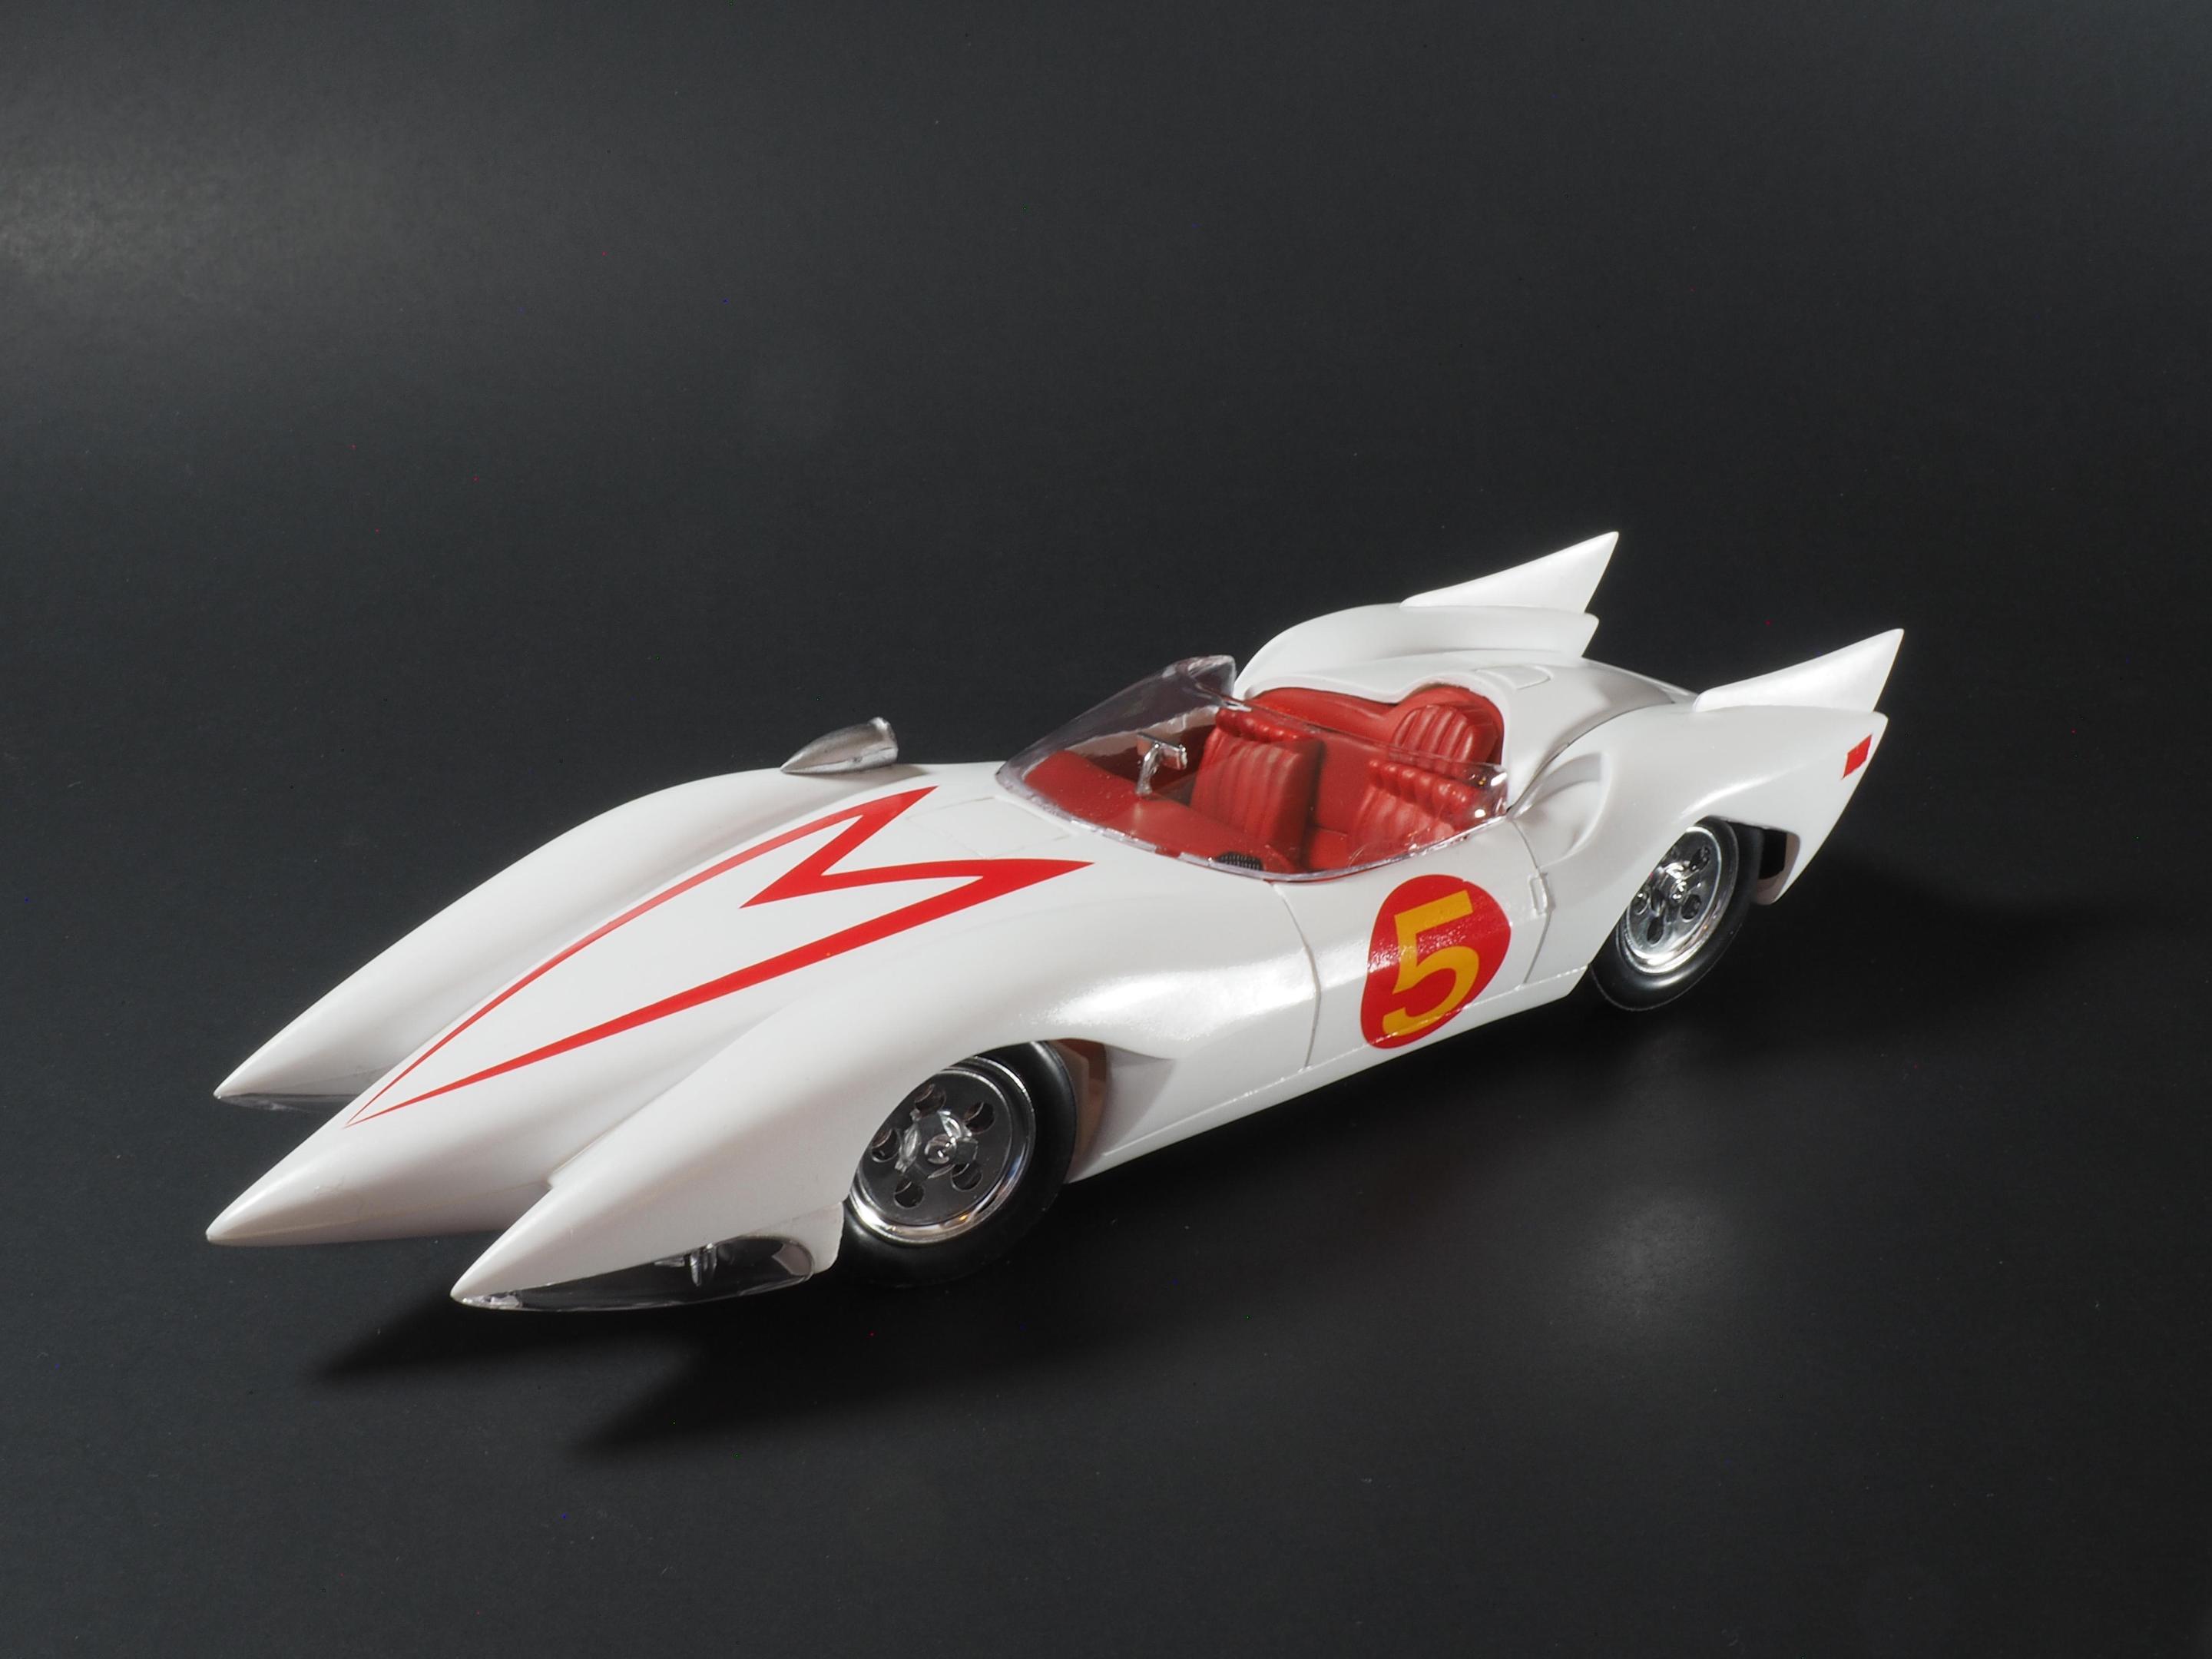 Speed Racer - Model Cars - Model Cars Magazine Forum